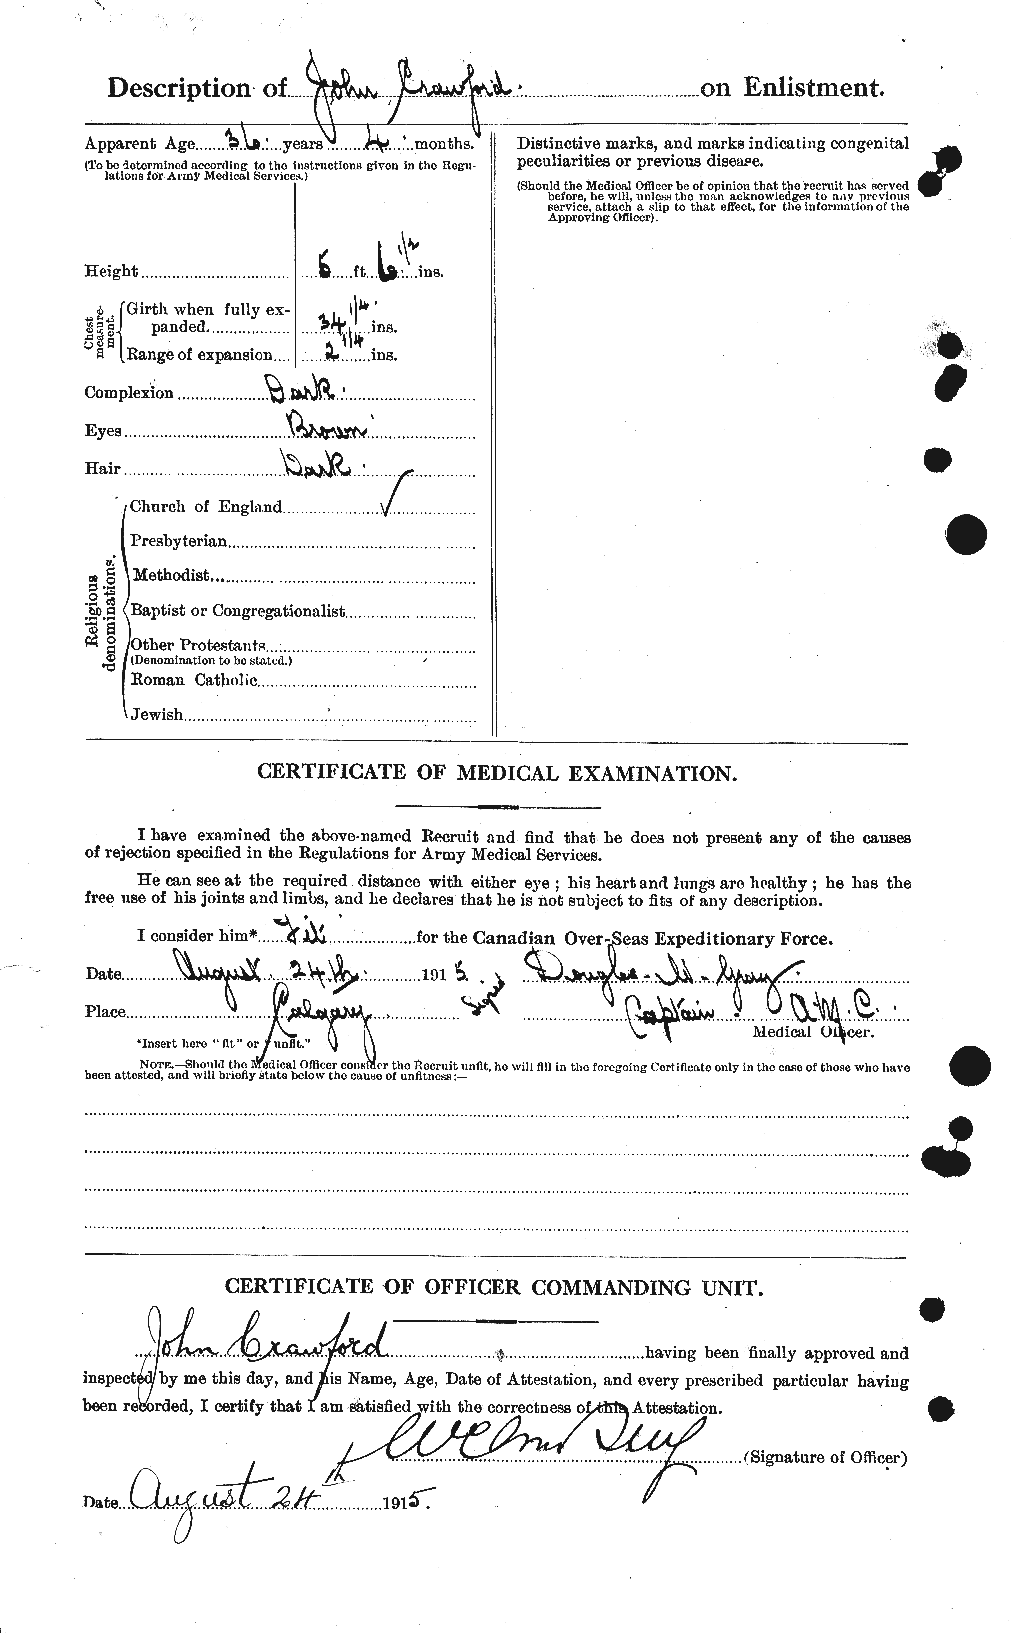 Dossiers du Personnel de la Première Guerre mondiale - CEC 062451b